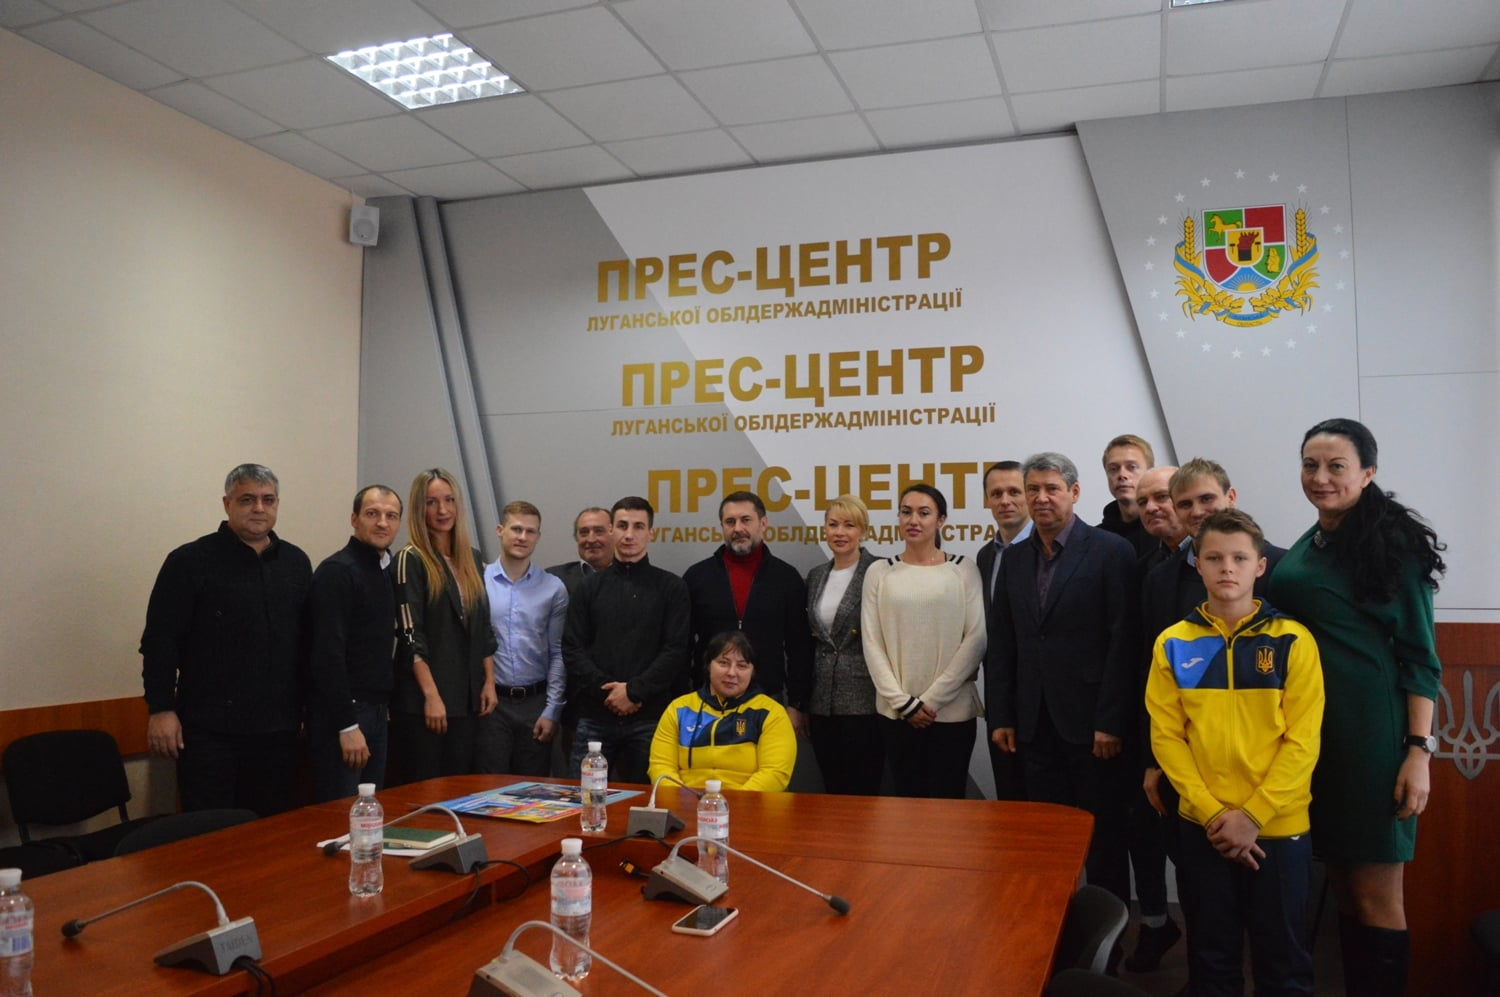 Луганщина заинтересована в спортсменах с высокими достижениями: модернизируют старые и построят новые спортзаведения